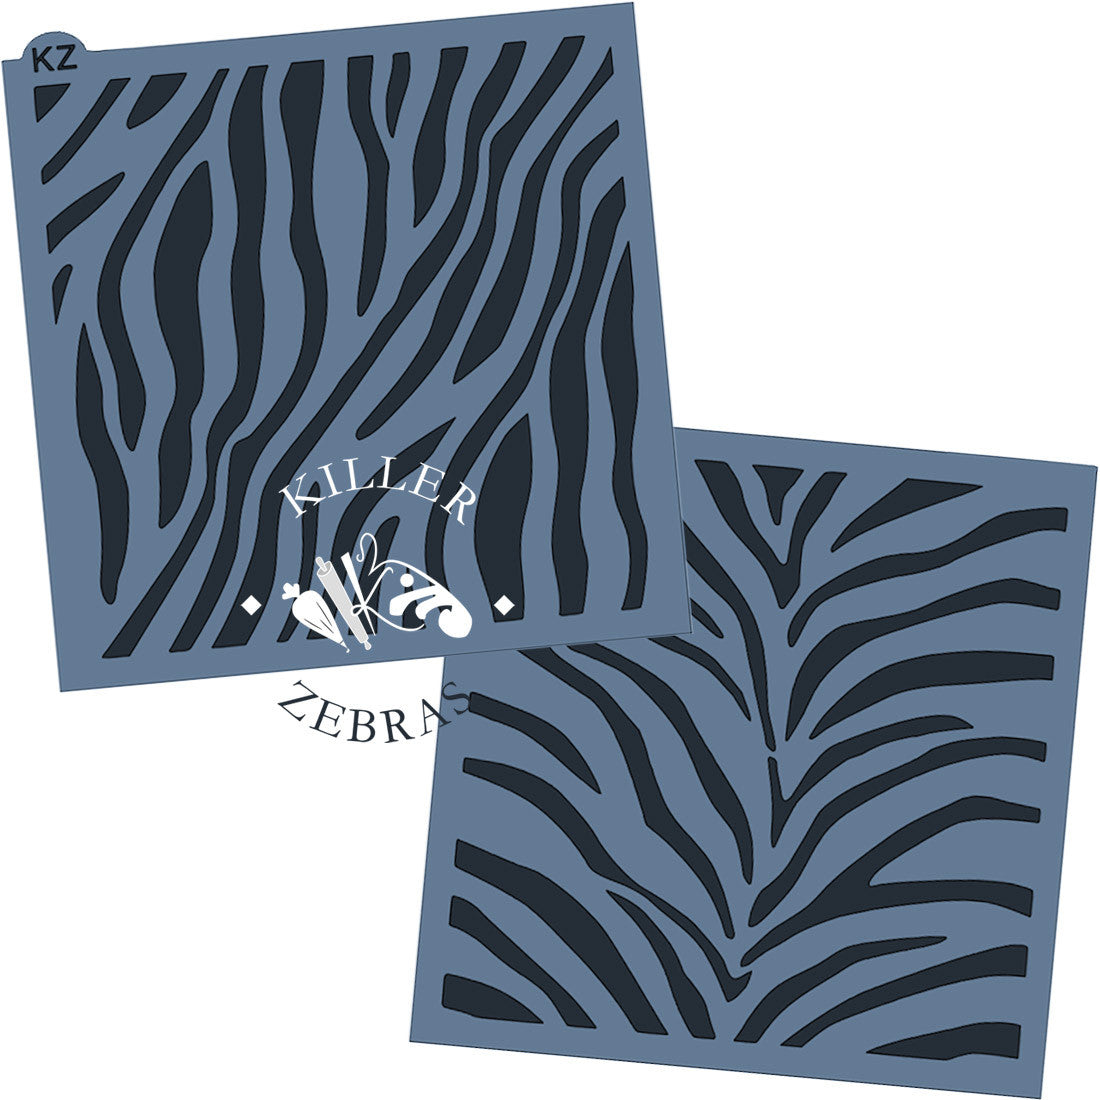 Stencil Zebra Print large - Textiellab-040